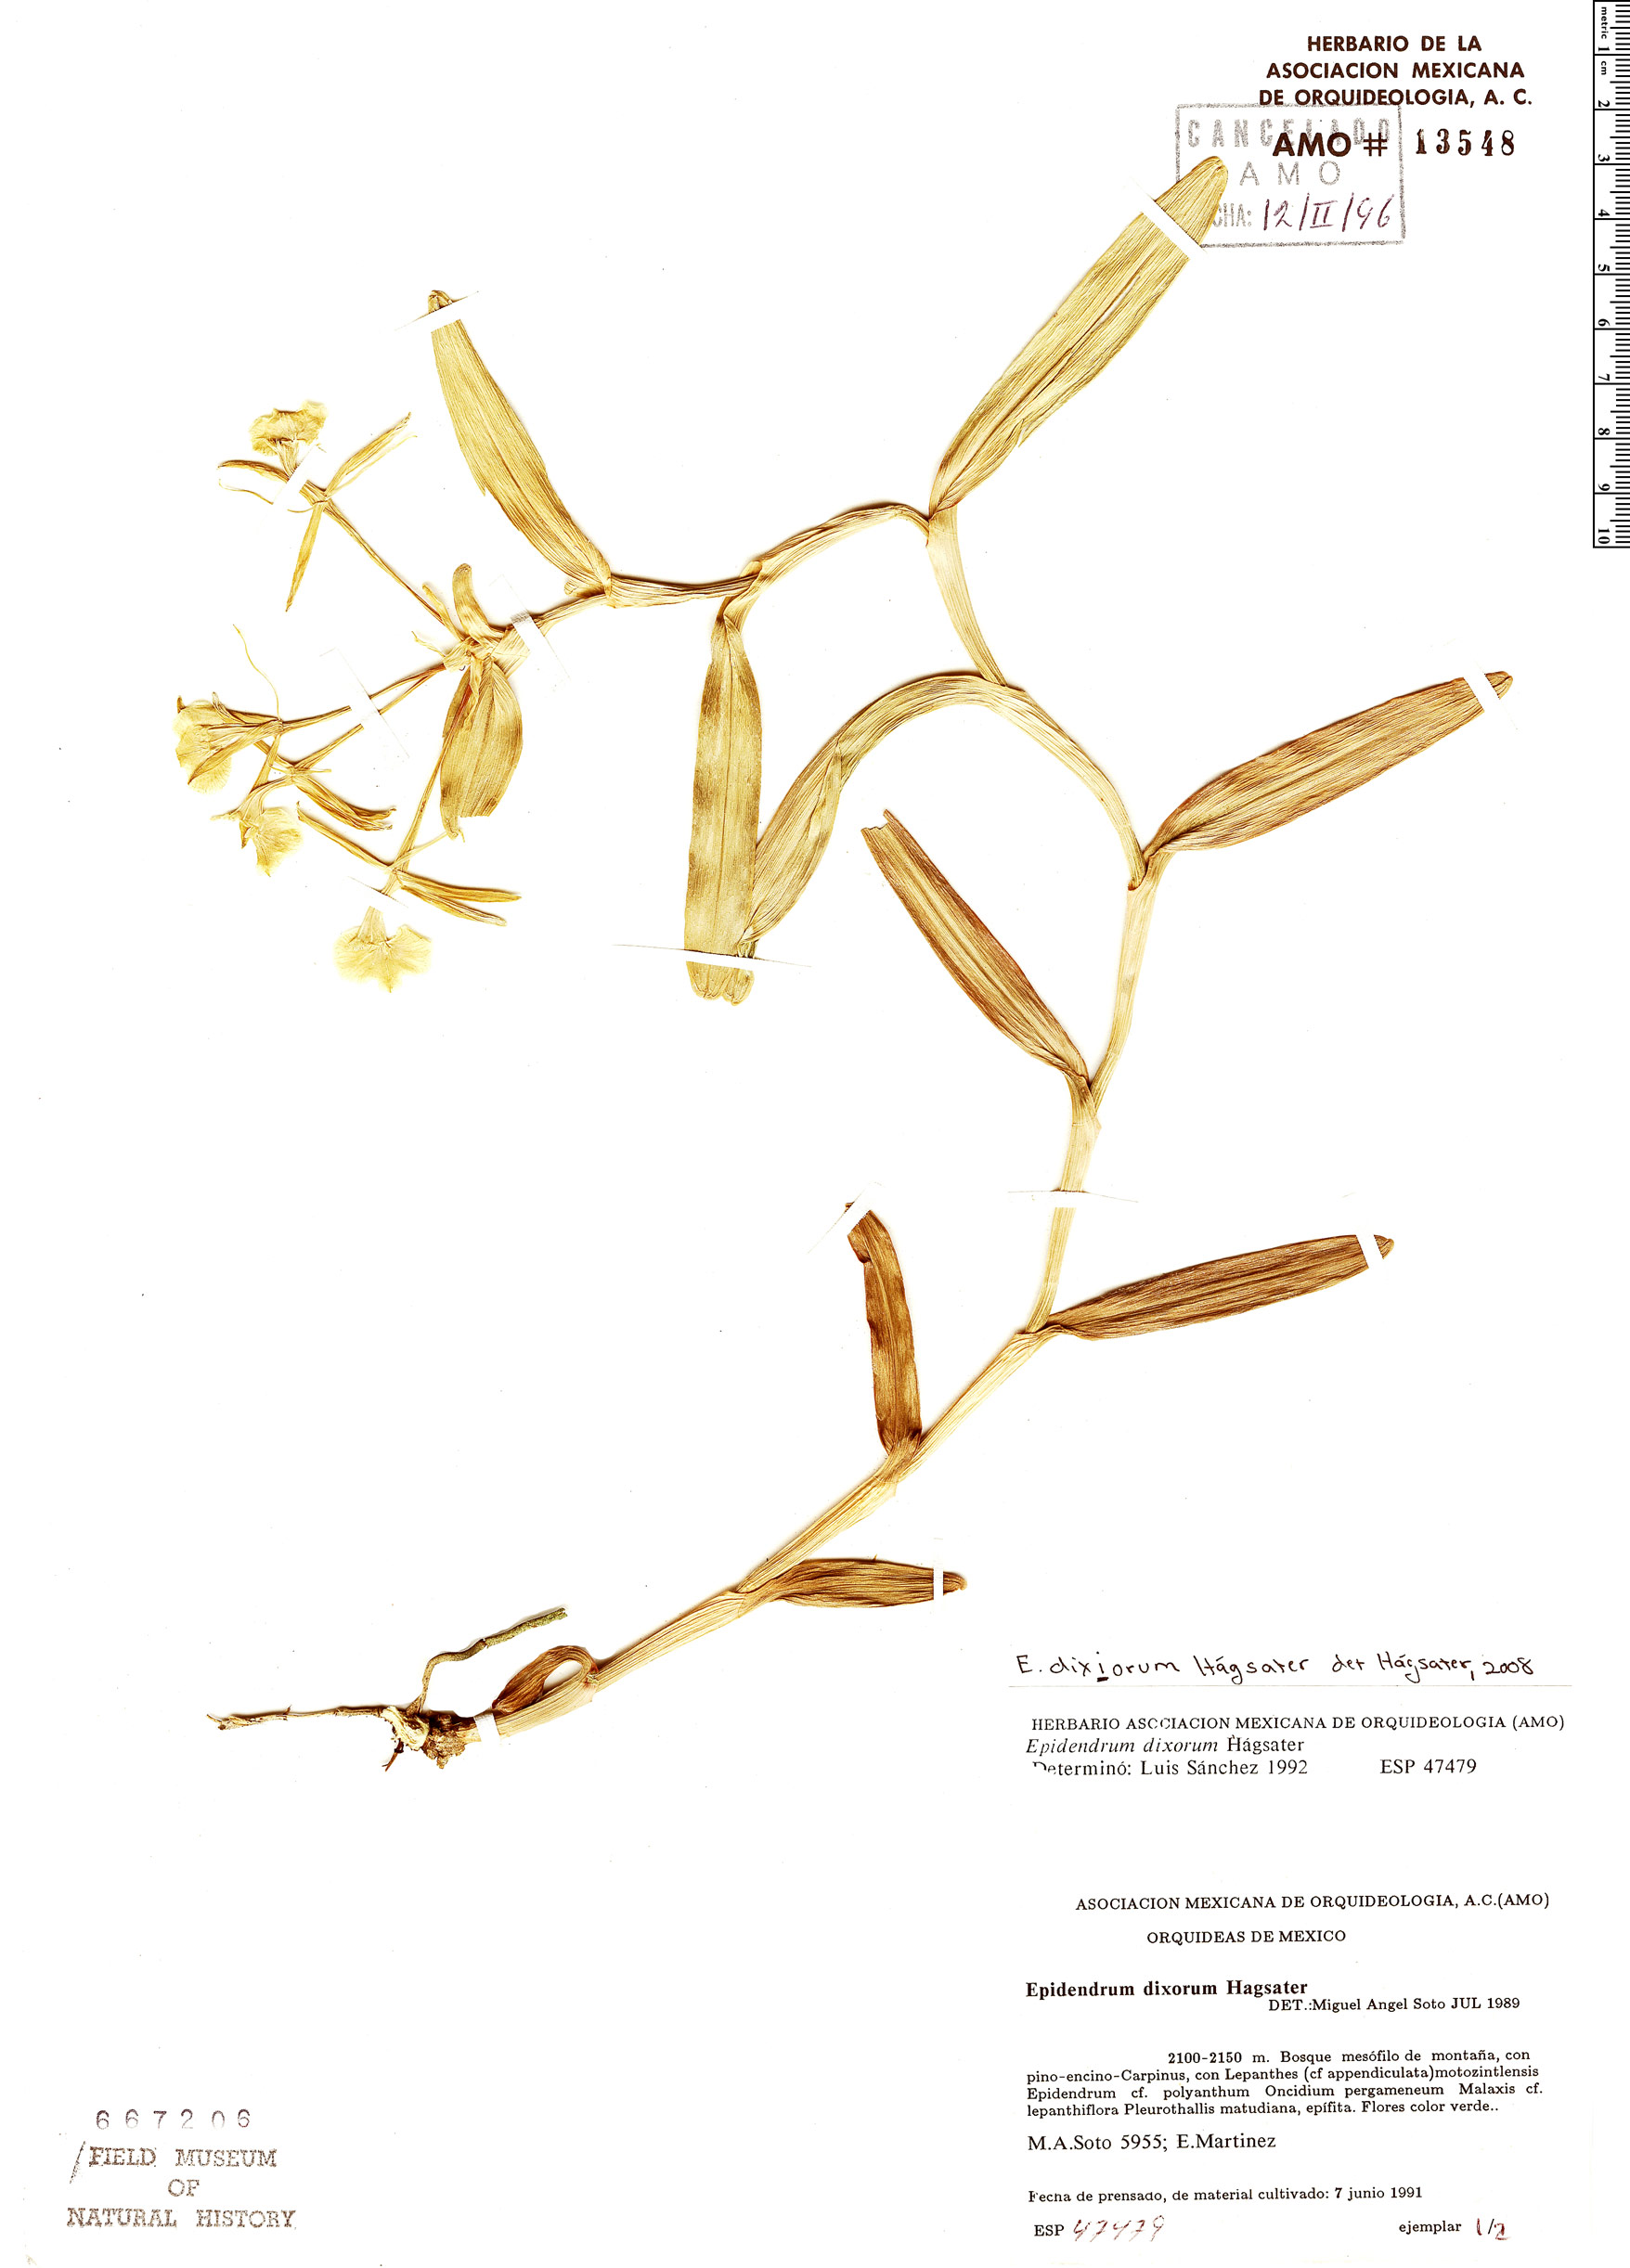 Epidendrum dixiorum image